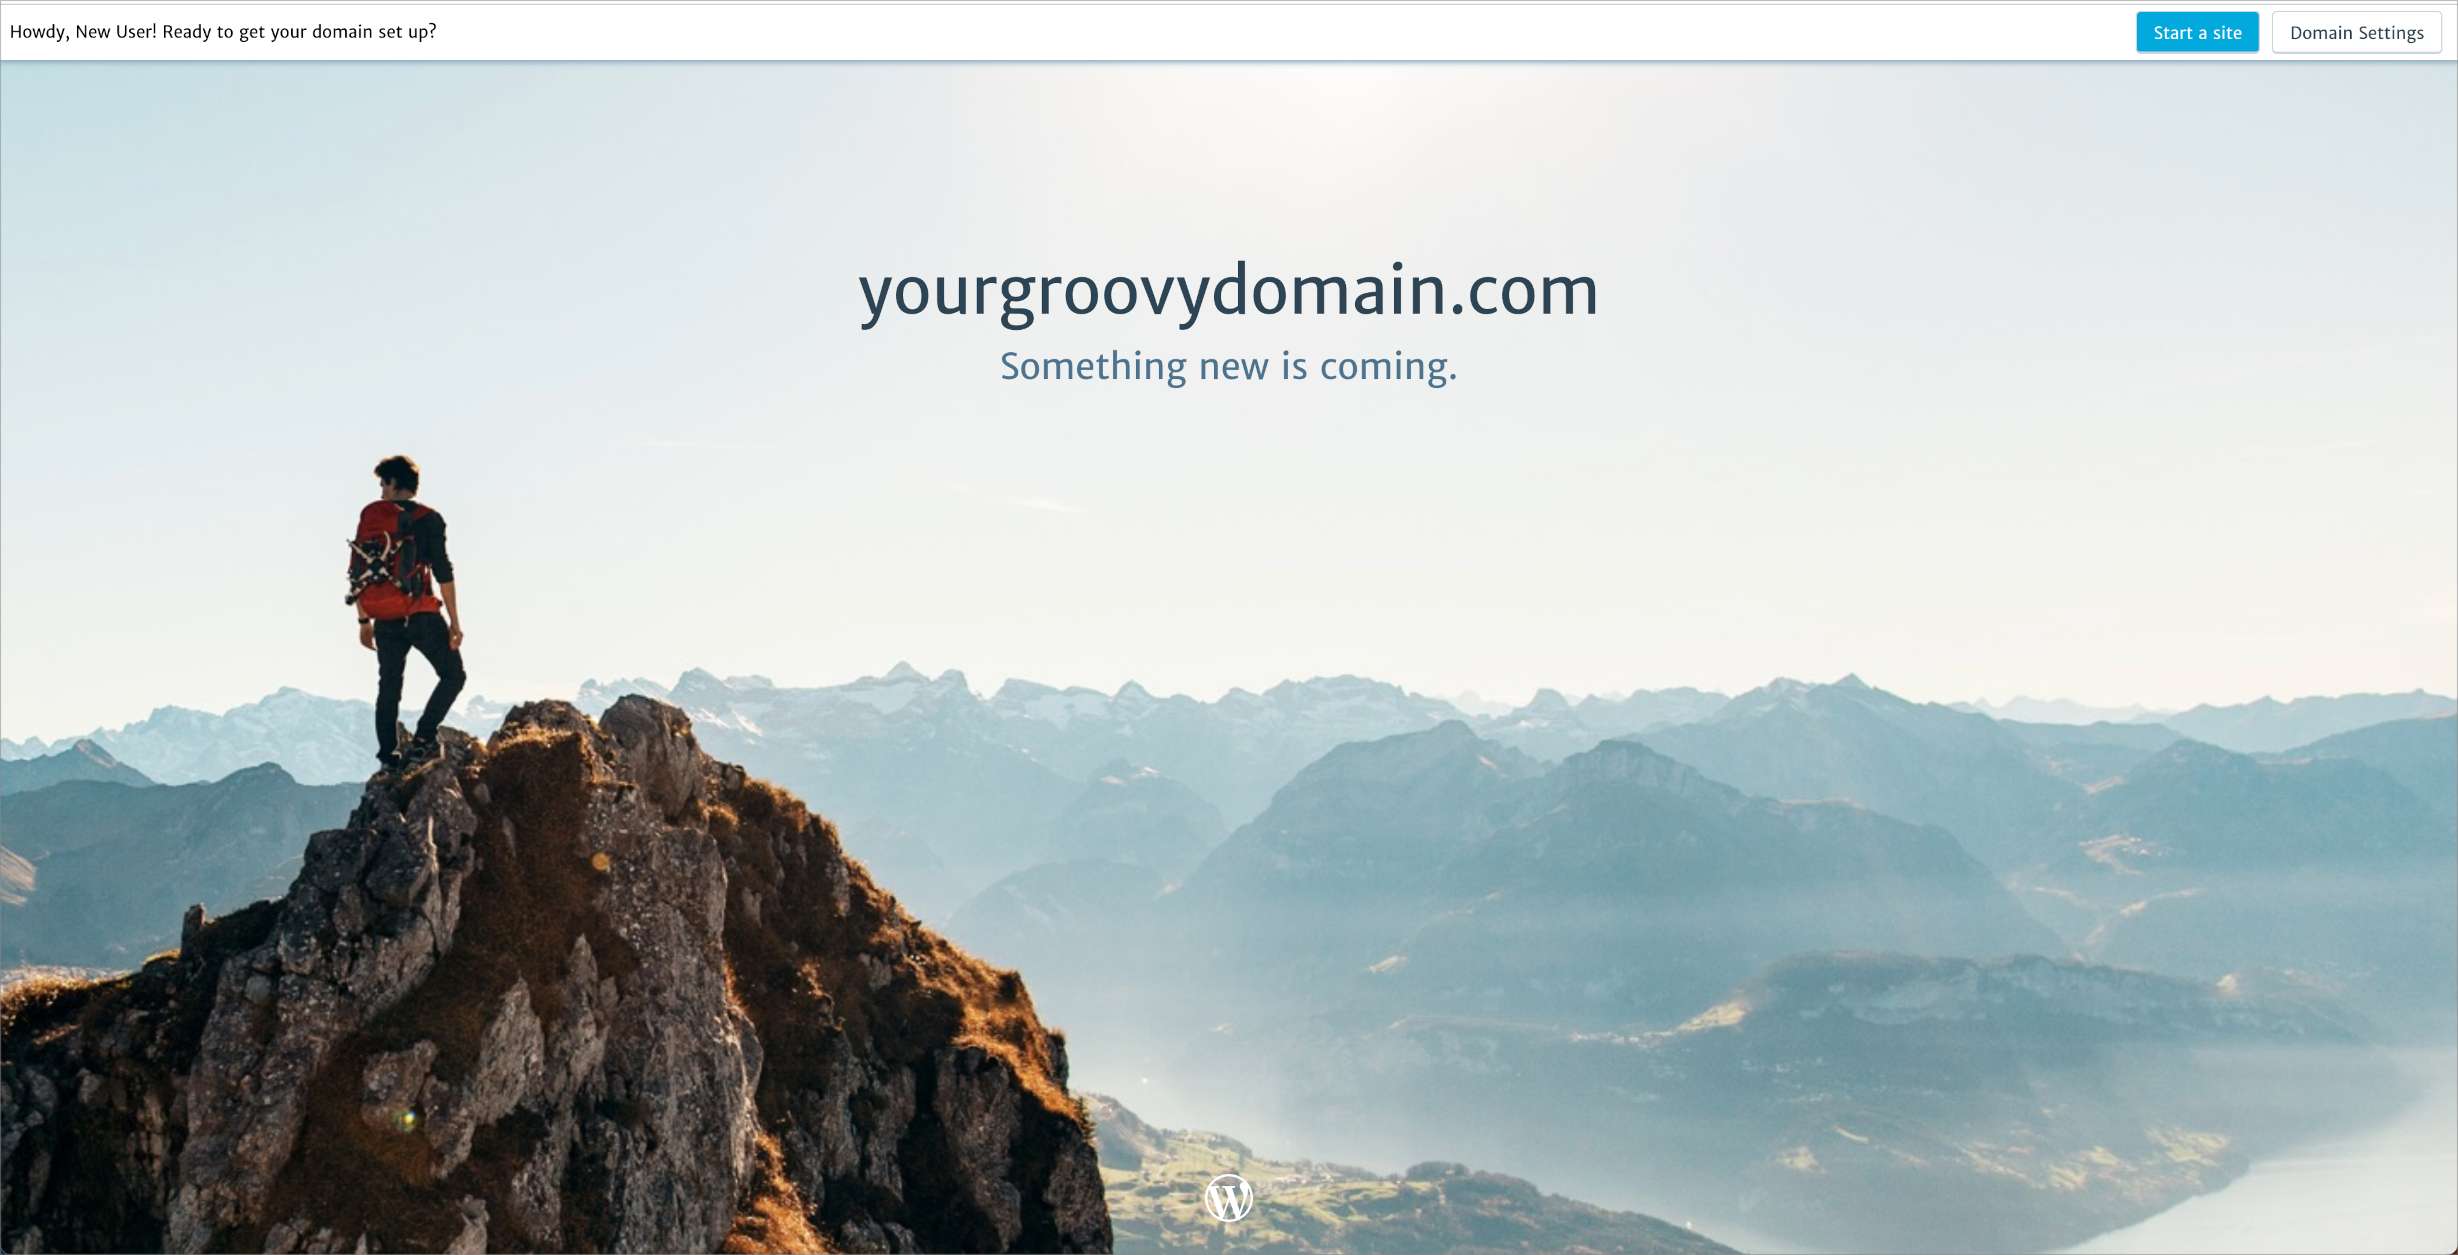 La pagina di destinazione del dominio, che mostra il nome di dominio e il testo "qualcosa di nuovo è in arrivo".